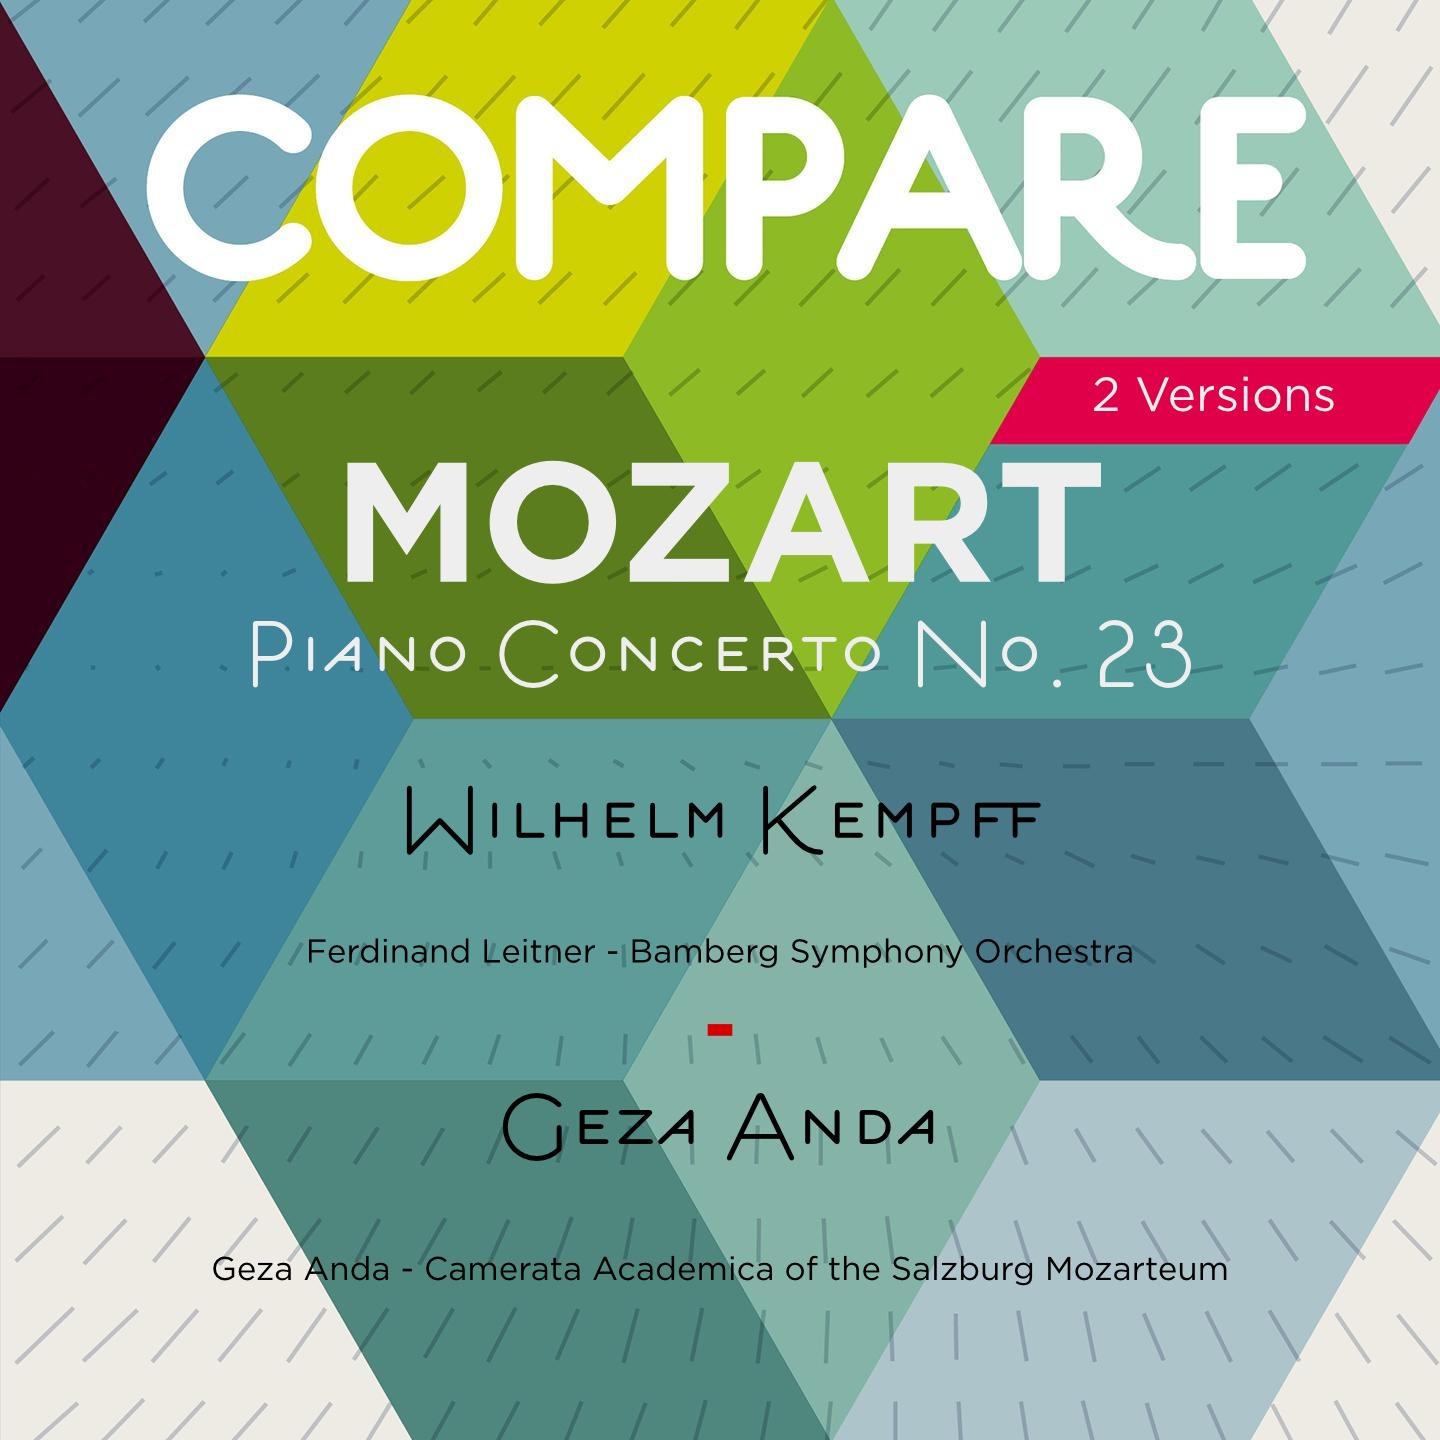 Piano Concerto No. 23 in A Major, K. 488: II. Adagio